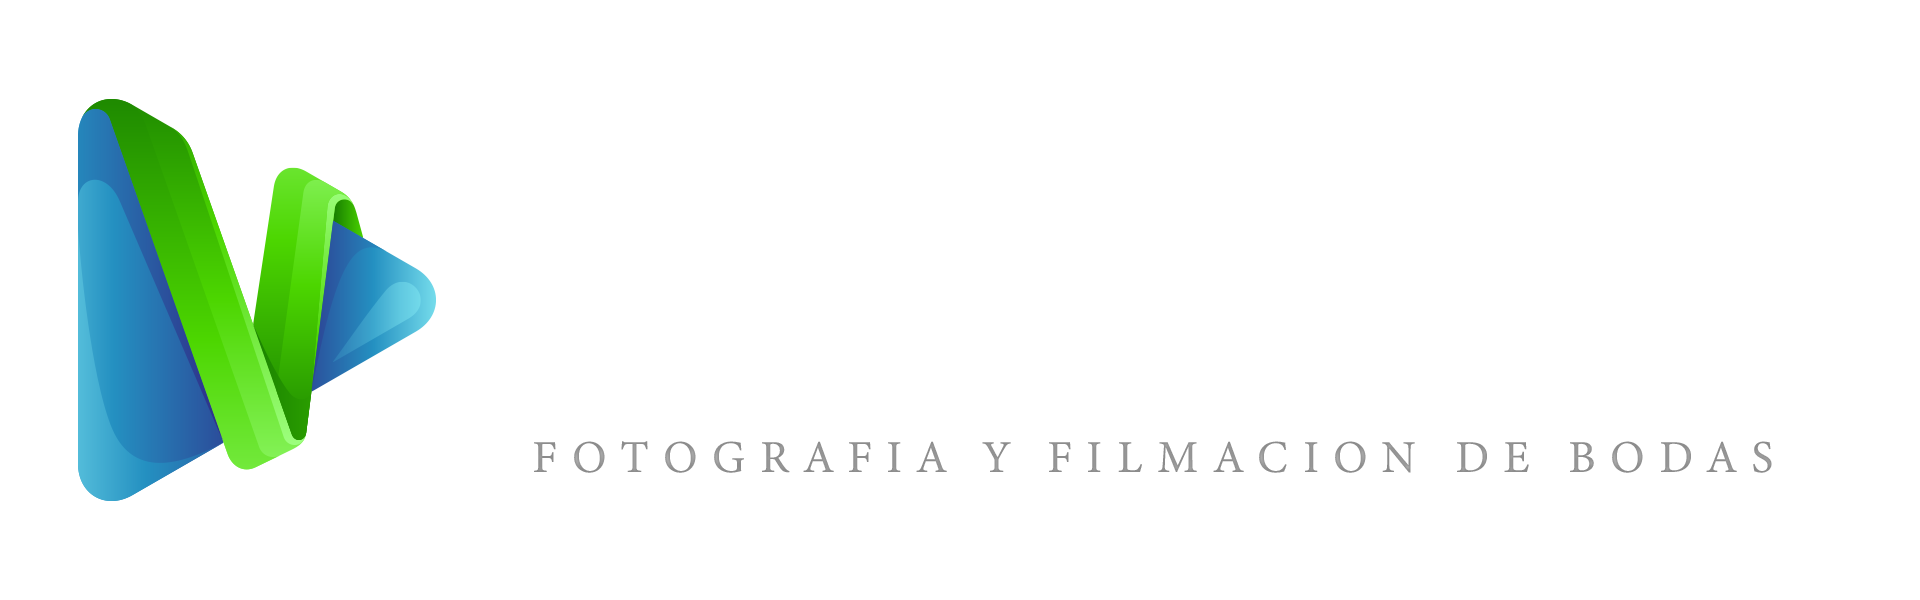 Logotipo de Tufotovideo empresa de Fotografía y filmación